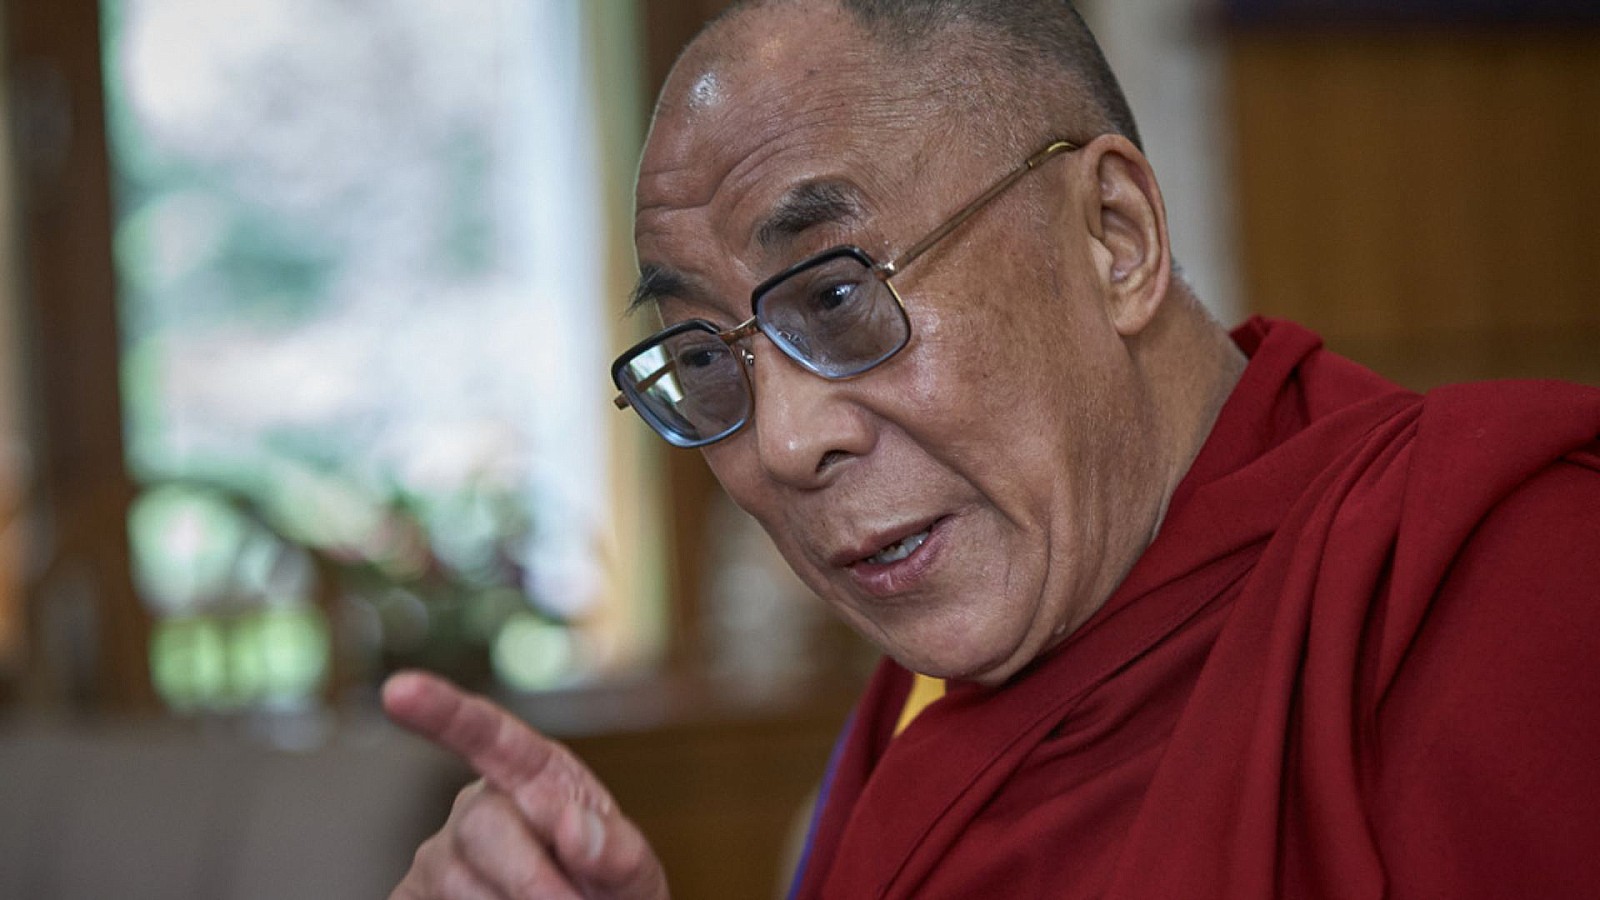 El Dalai Lama se disculpa tras besar a un niño en la boca